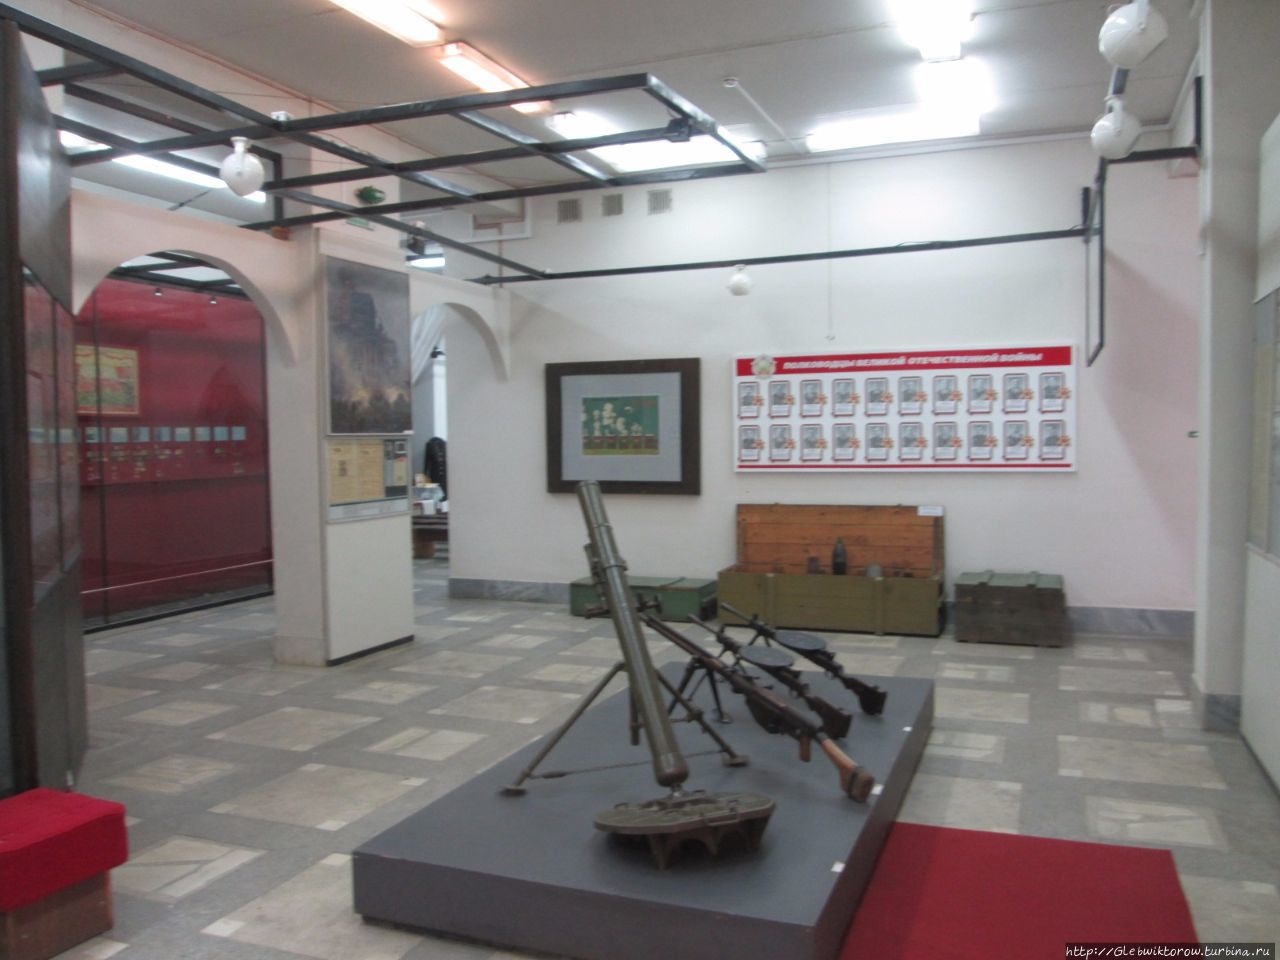 Хороший музей военной истории